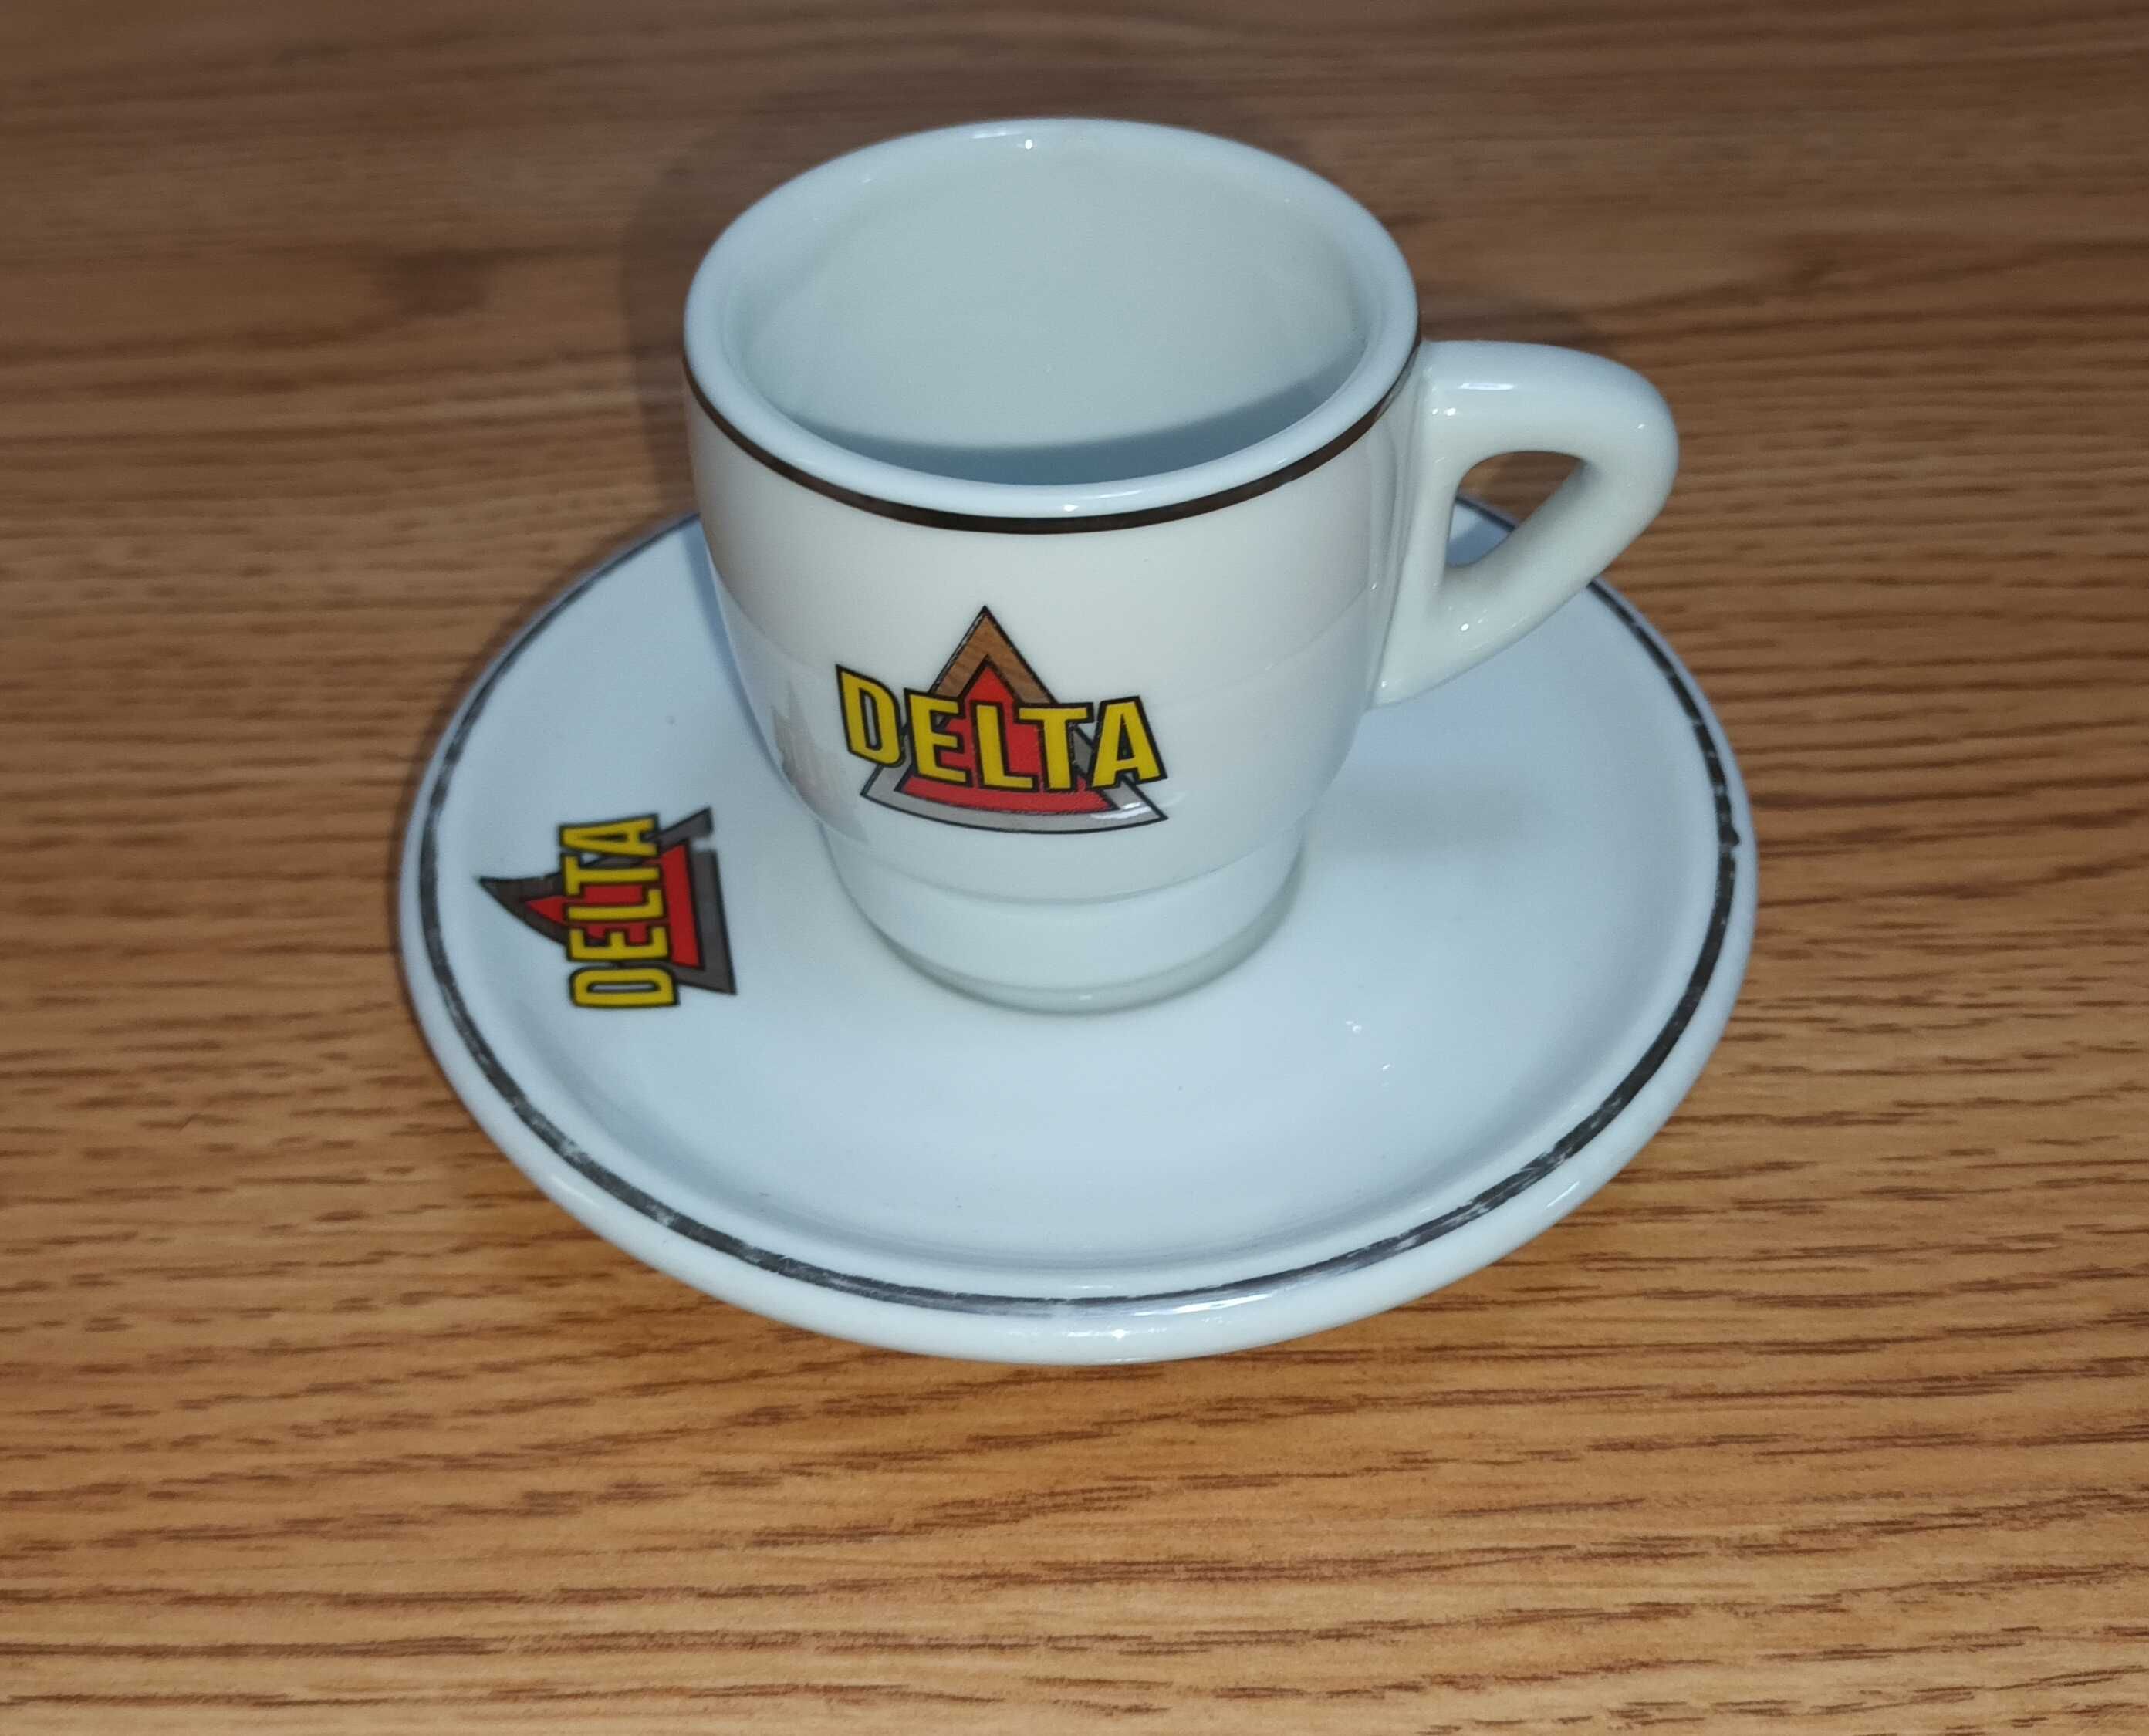 Chavena de café antiga "Delta Lote Platina" dos anos 90 com pires